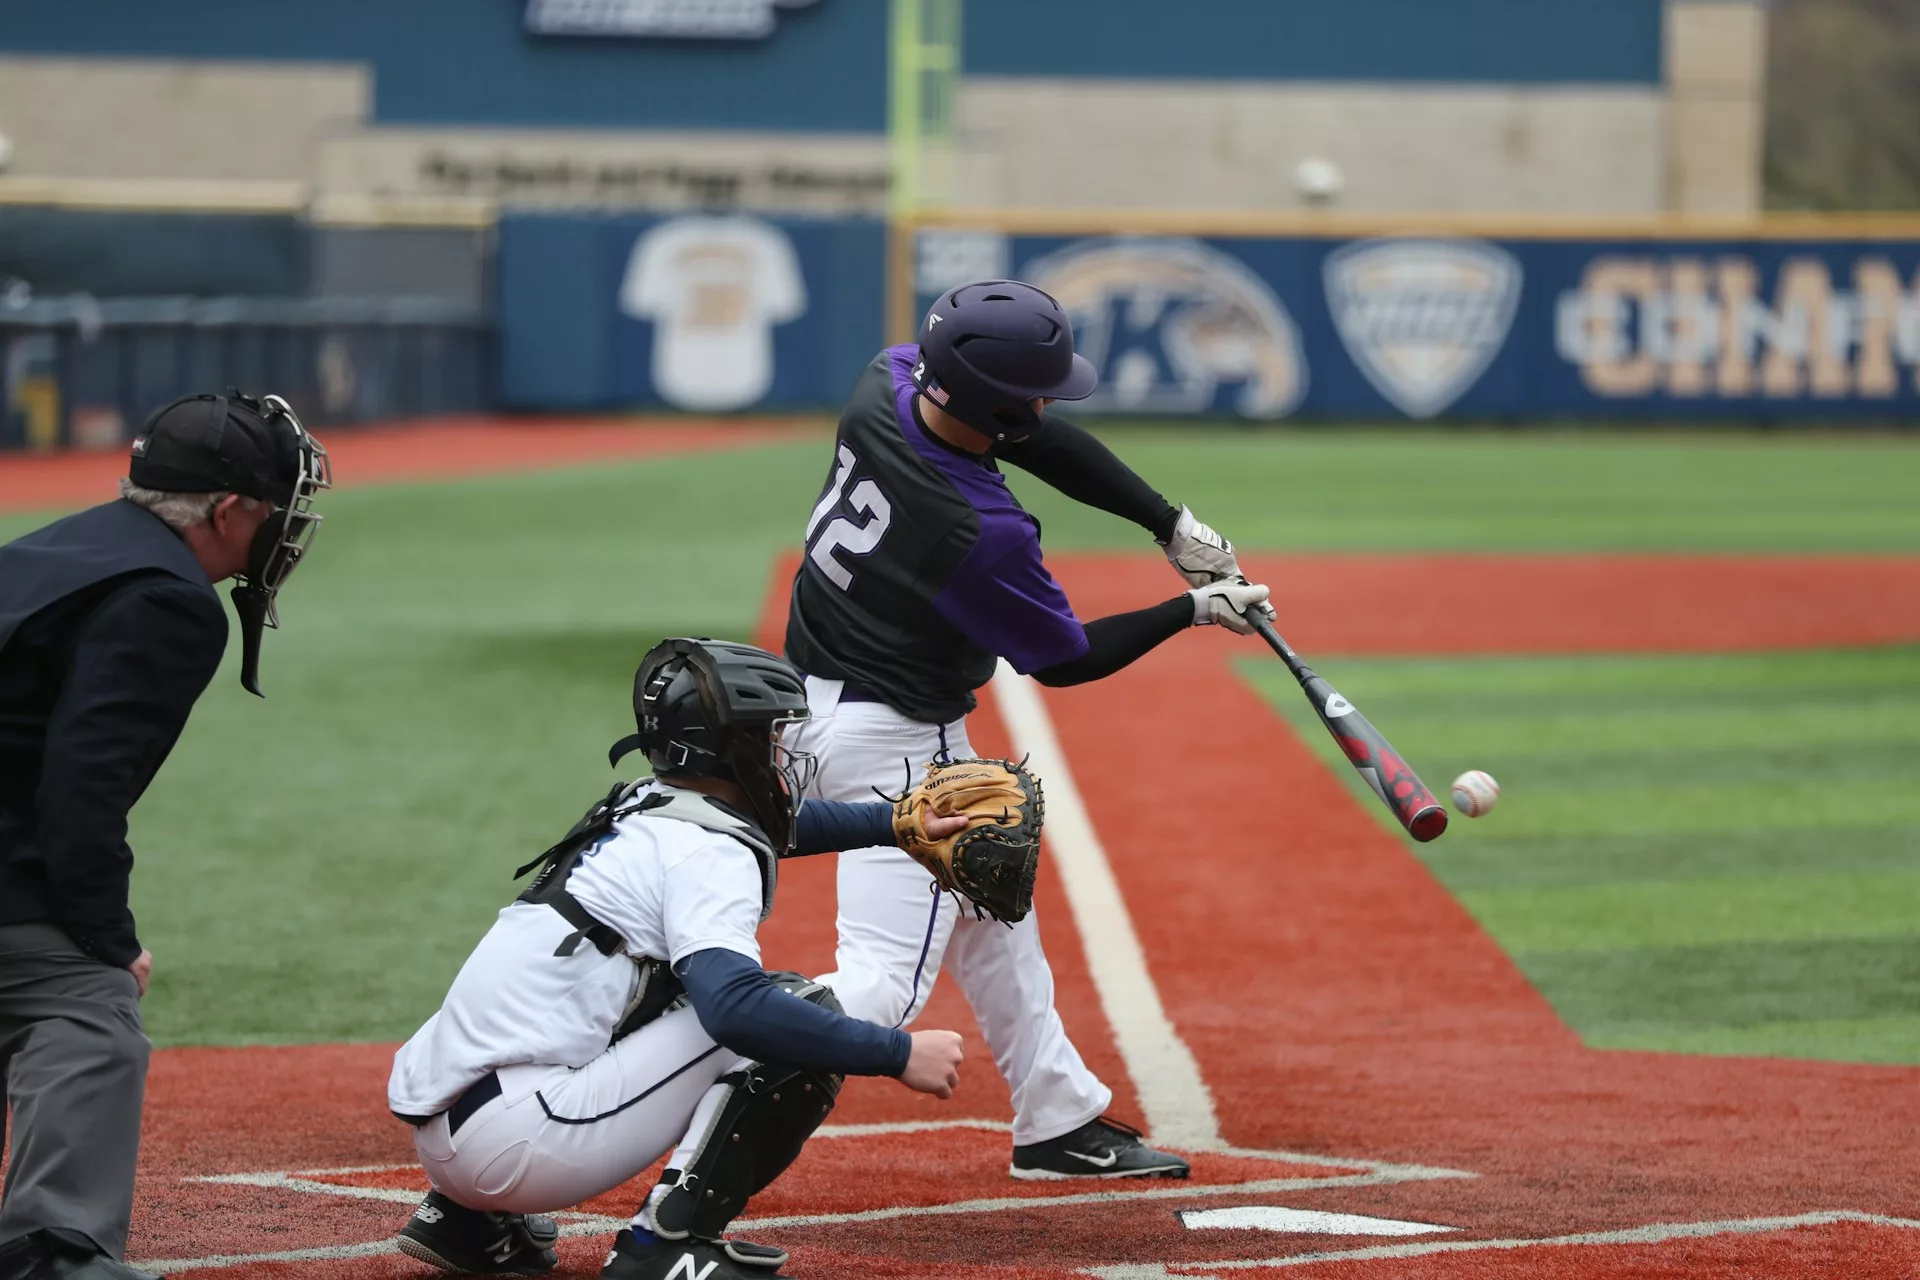 Batter swinging at baseball while catcher observes on baseball field.